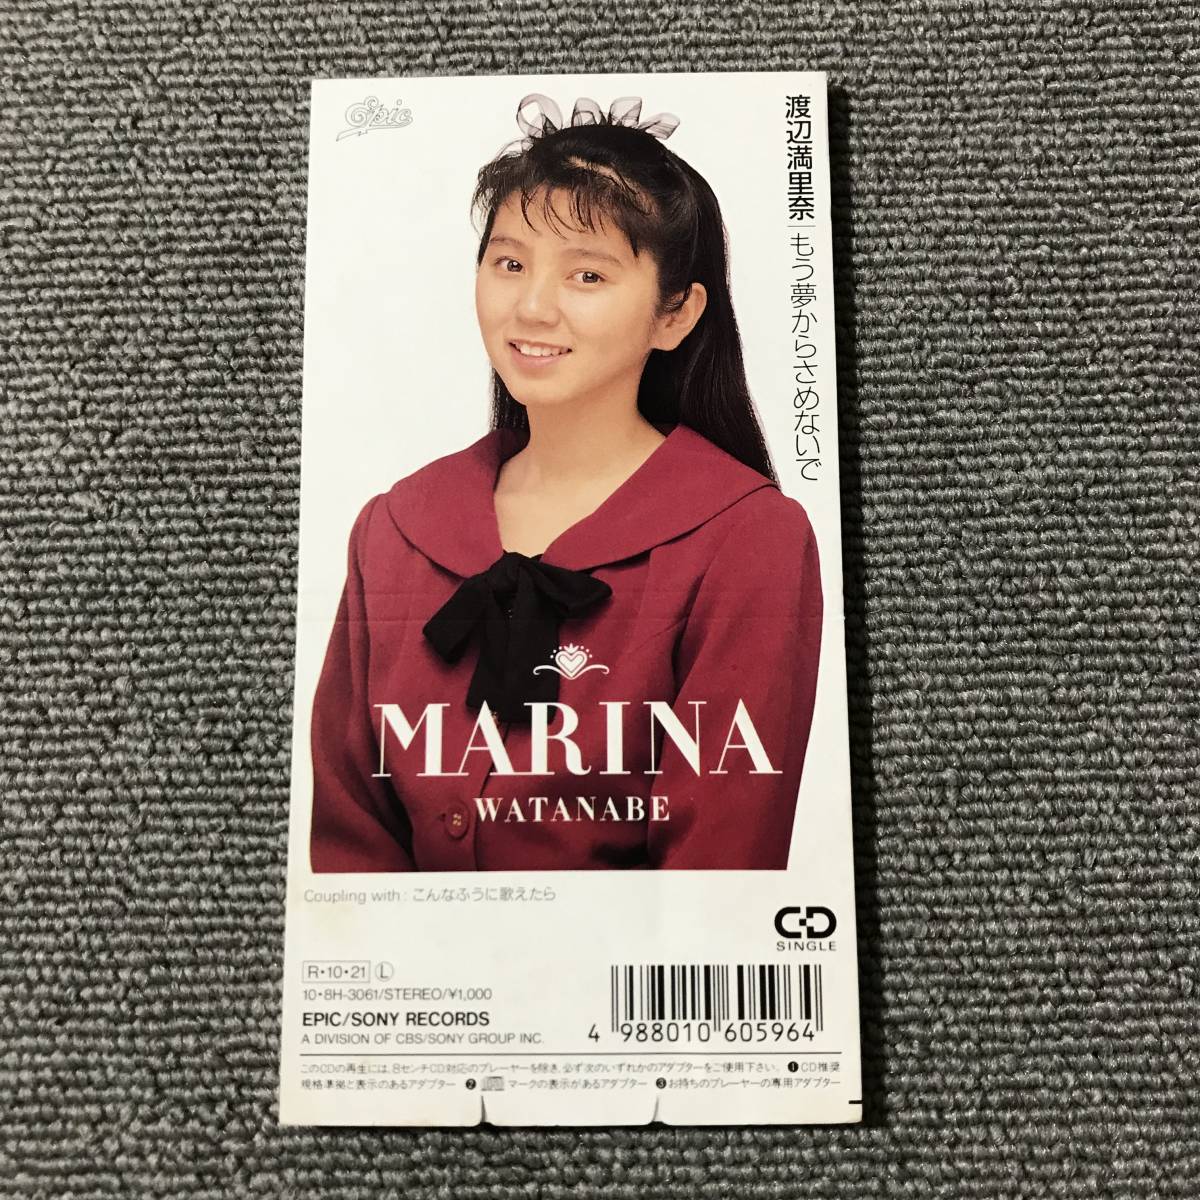  Watanabe Marina / уже сон из .. нет .#8cm одиночный CD# номер образца :10*8H-3061#AZ-3172